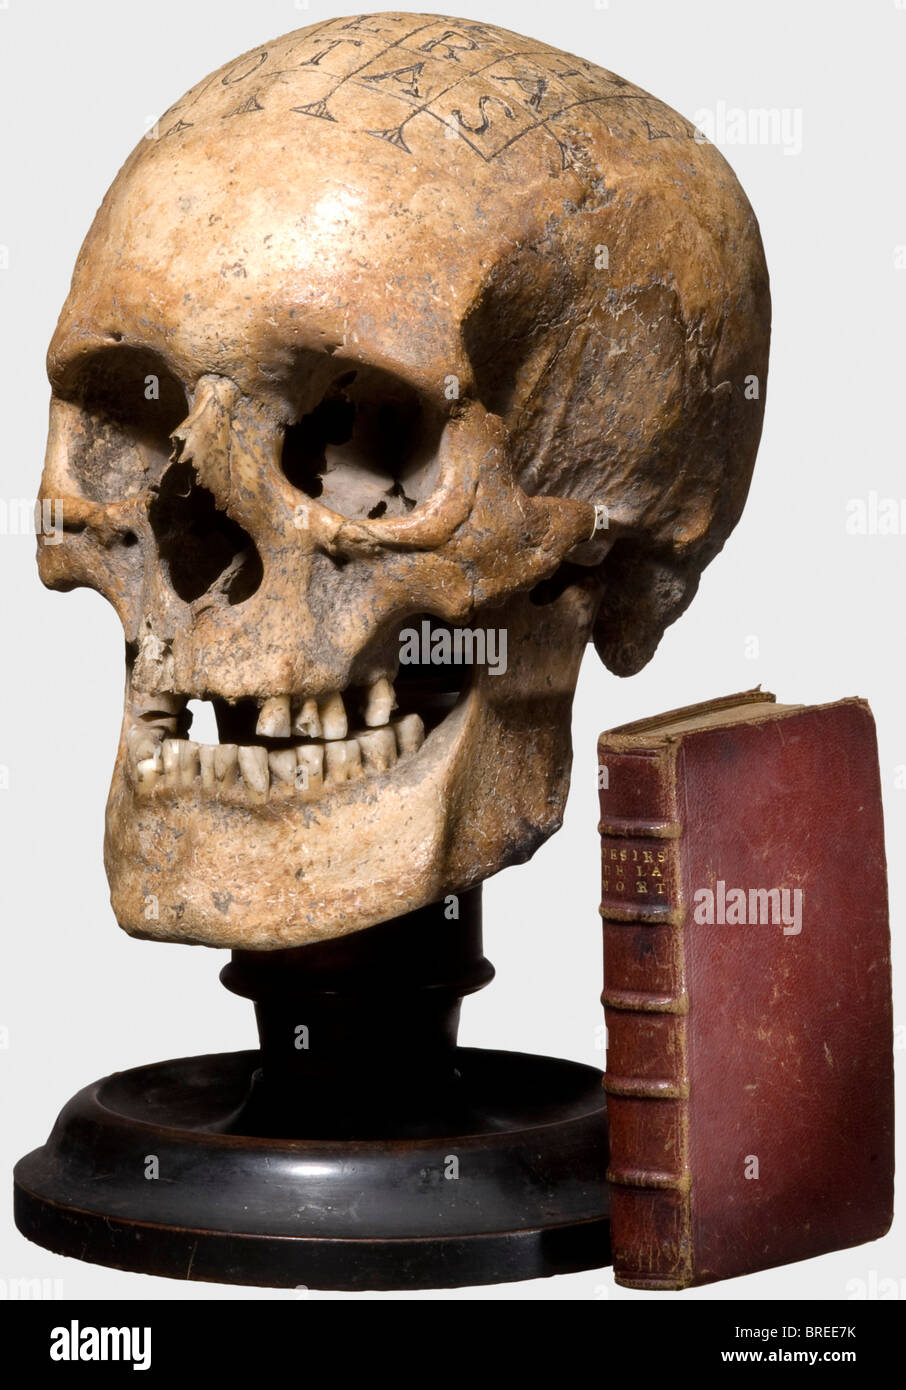 Crâne humain avec carré magique, allemand, 16ème/17ème siècle Bien préservé, ancien crâne romain/celtique avec mâchoire inférieure et de légères restes d'incrustations. Certaines dents sont manquantes, certaines partiellement cassées, le côté droit du crâne est endommagé. Le skullcap avec une gravure du XVIe/XVIIe siècle, une place magique avec la formule Siator. Les lignes gravées avec des restes de noircissement. Monté sur un support en bois de date ultérieure, env. 1800. Hauteur 27 cm. Un petit livre avec une couverture en cuir en relief doré: Henry Fricx, "les déRS de la mort", Bruxelles 1773. La magie, Banque D'Images